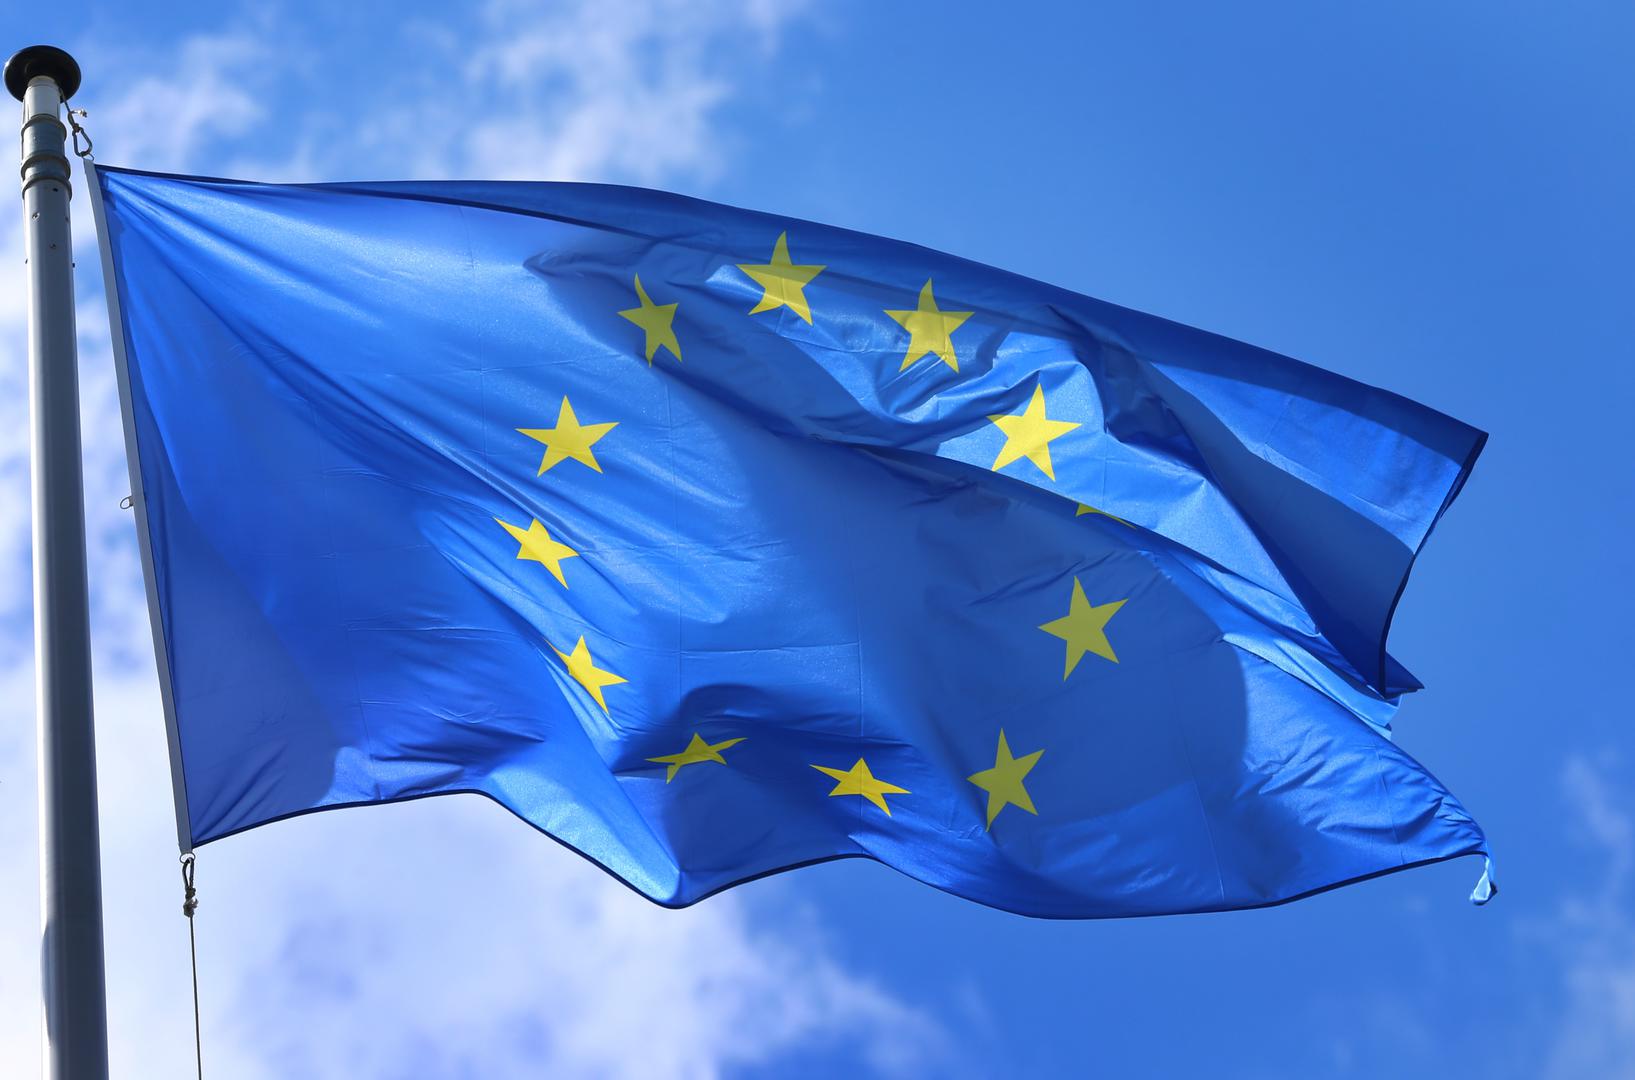 Što se tiče Europe Hamilton-Parker predviđa - novu zastavu EU. Zvjezdice koje predstavljaju države članice bit će smještene u kutu kao na zastavi SAD-a. 